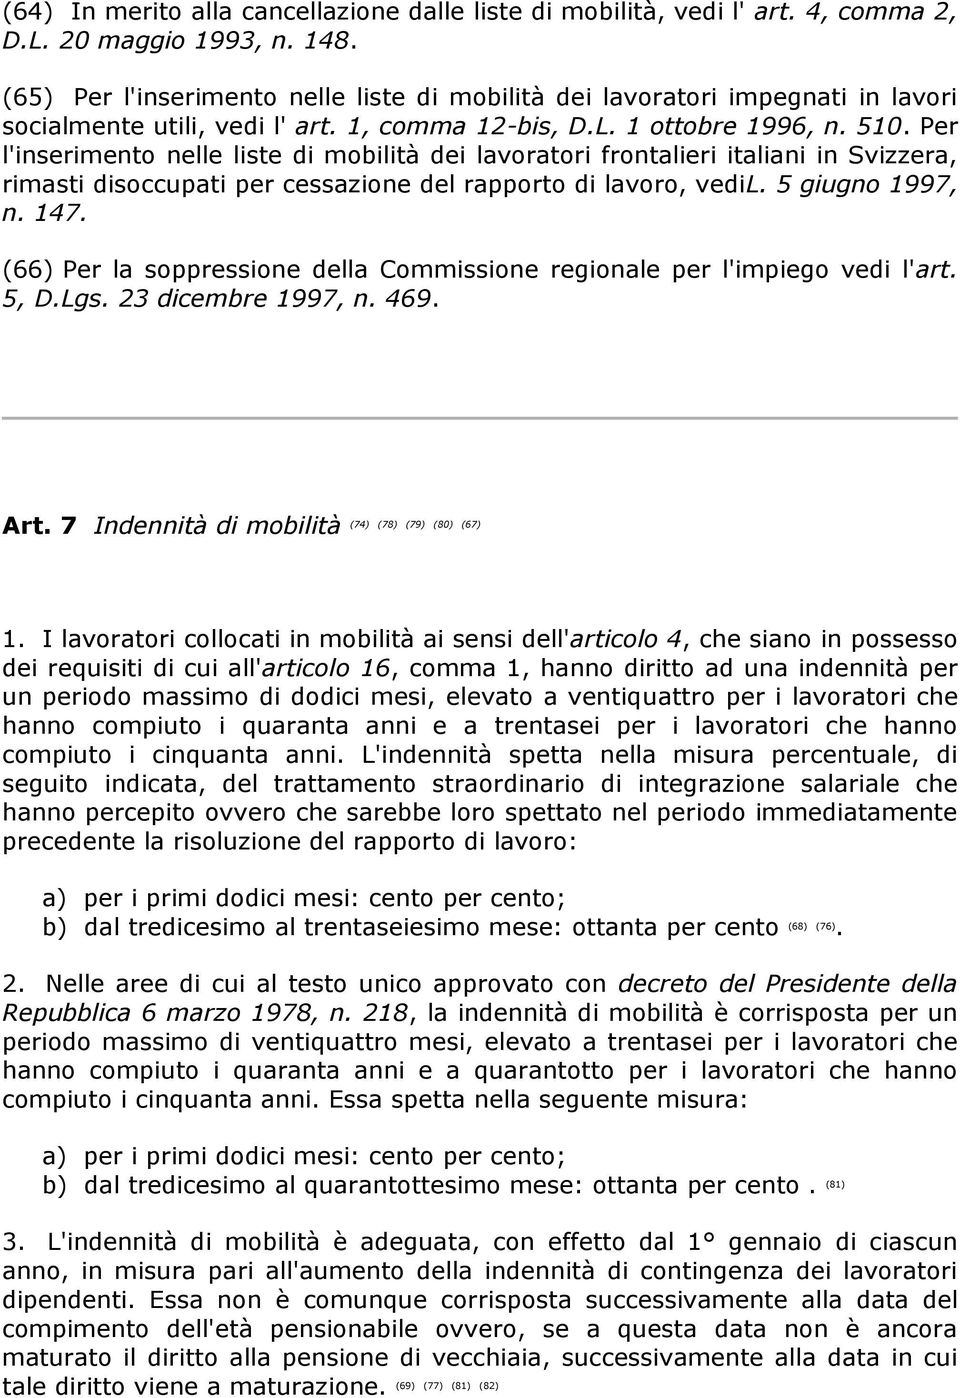 Per l'inserimento nelle liste di mobilità dei lavoratori frontalieri italiani in Svizzera, rimasti disoccupati per cessazione del rapporto di lavoro, vedil. 5 giugno 1997, n. 147.